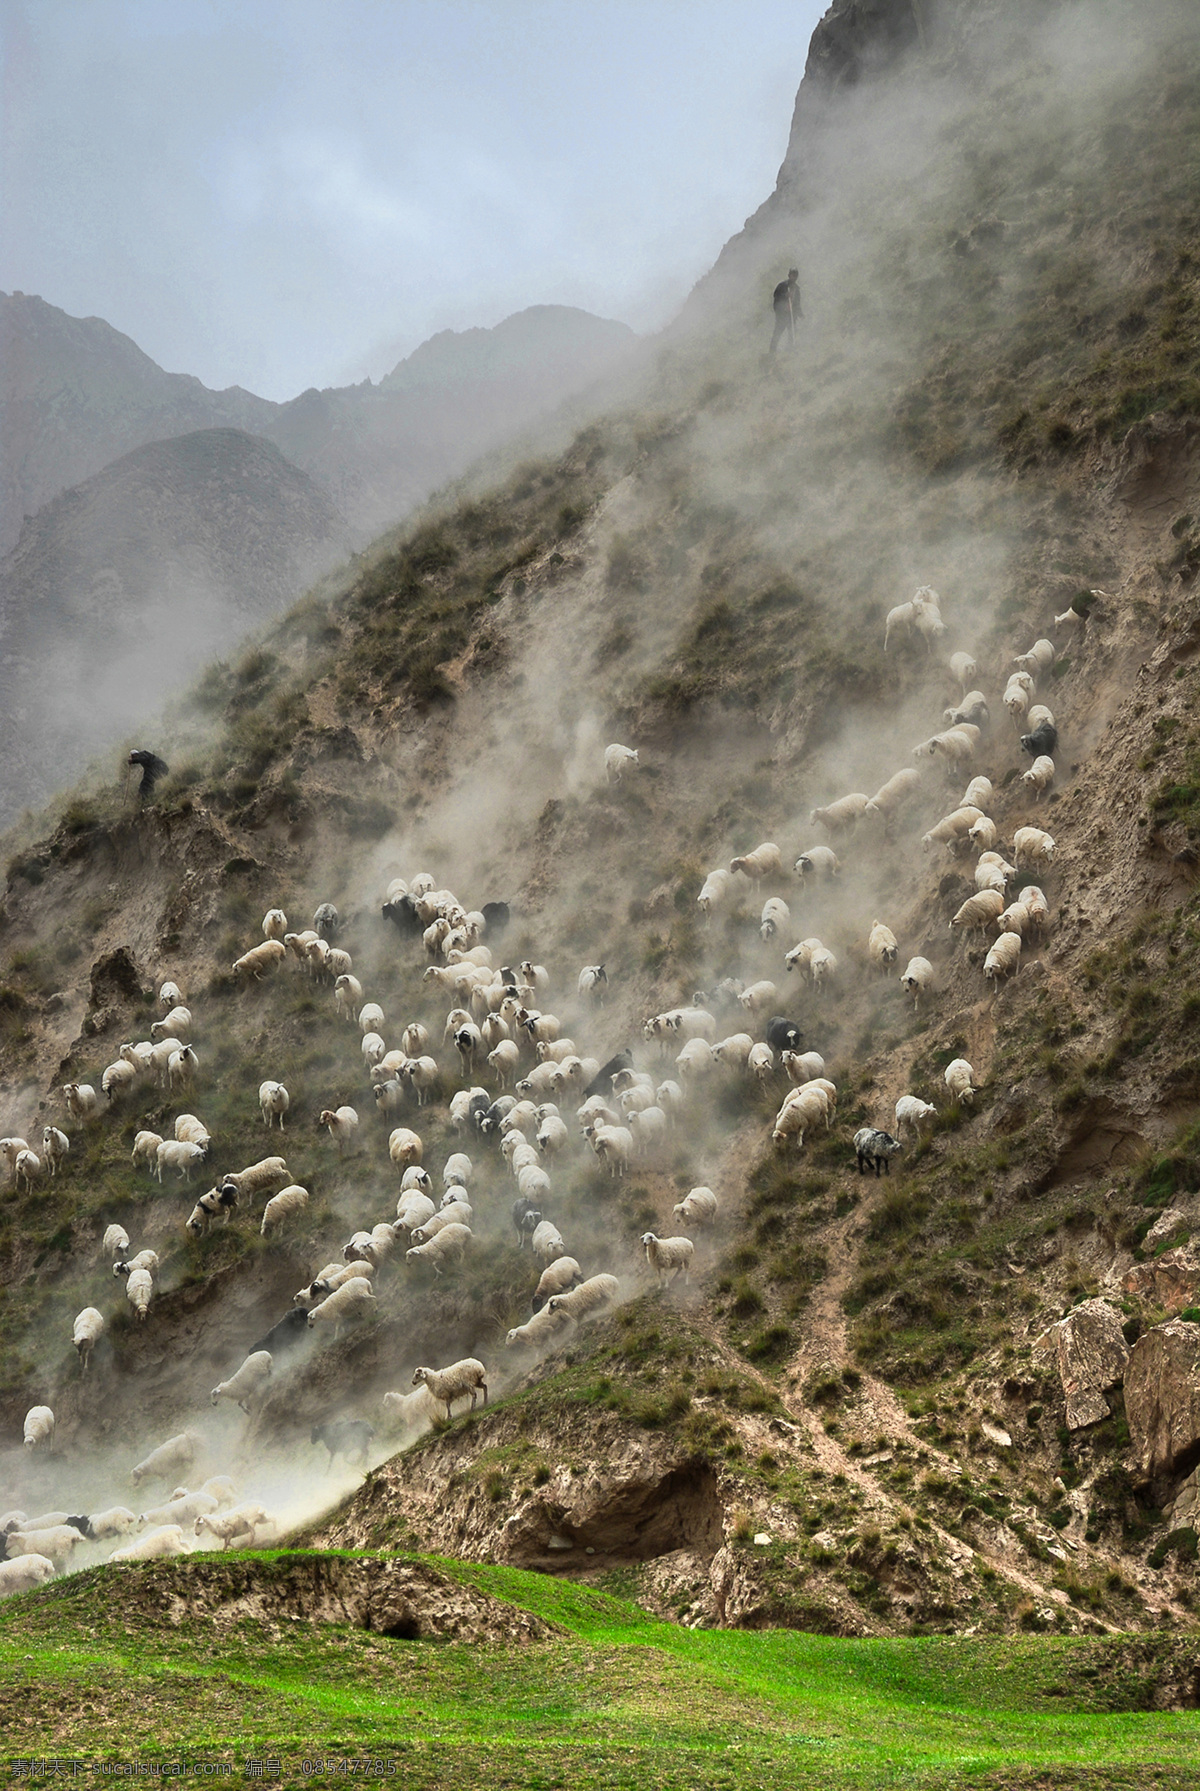 新疆风景图片 风景 高山区 羊 自然景观